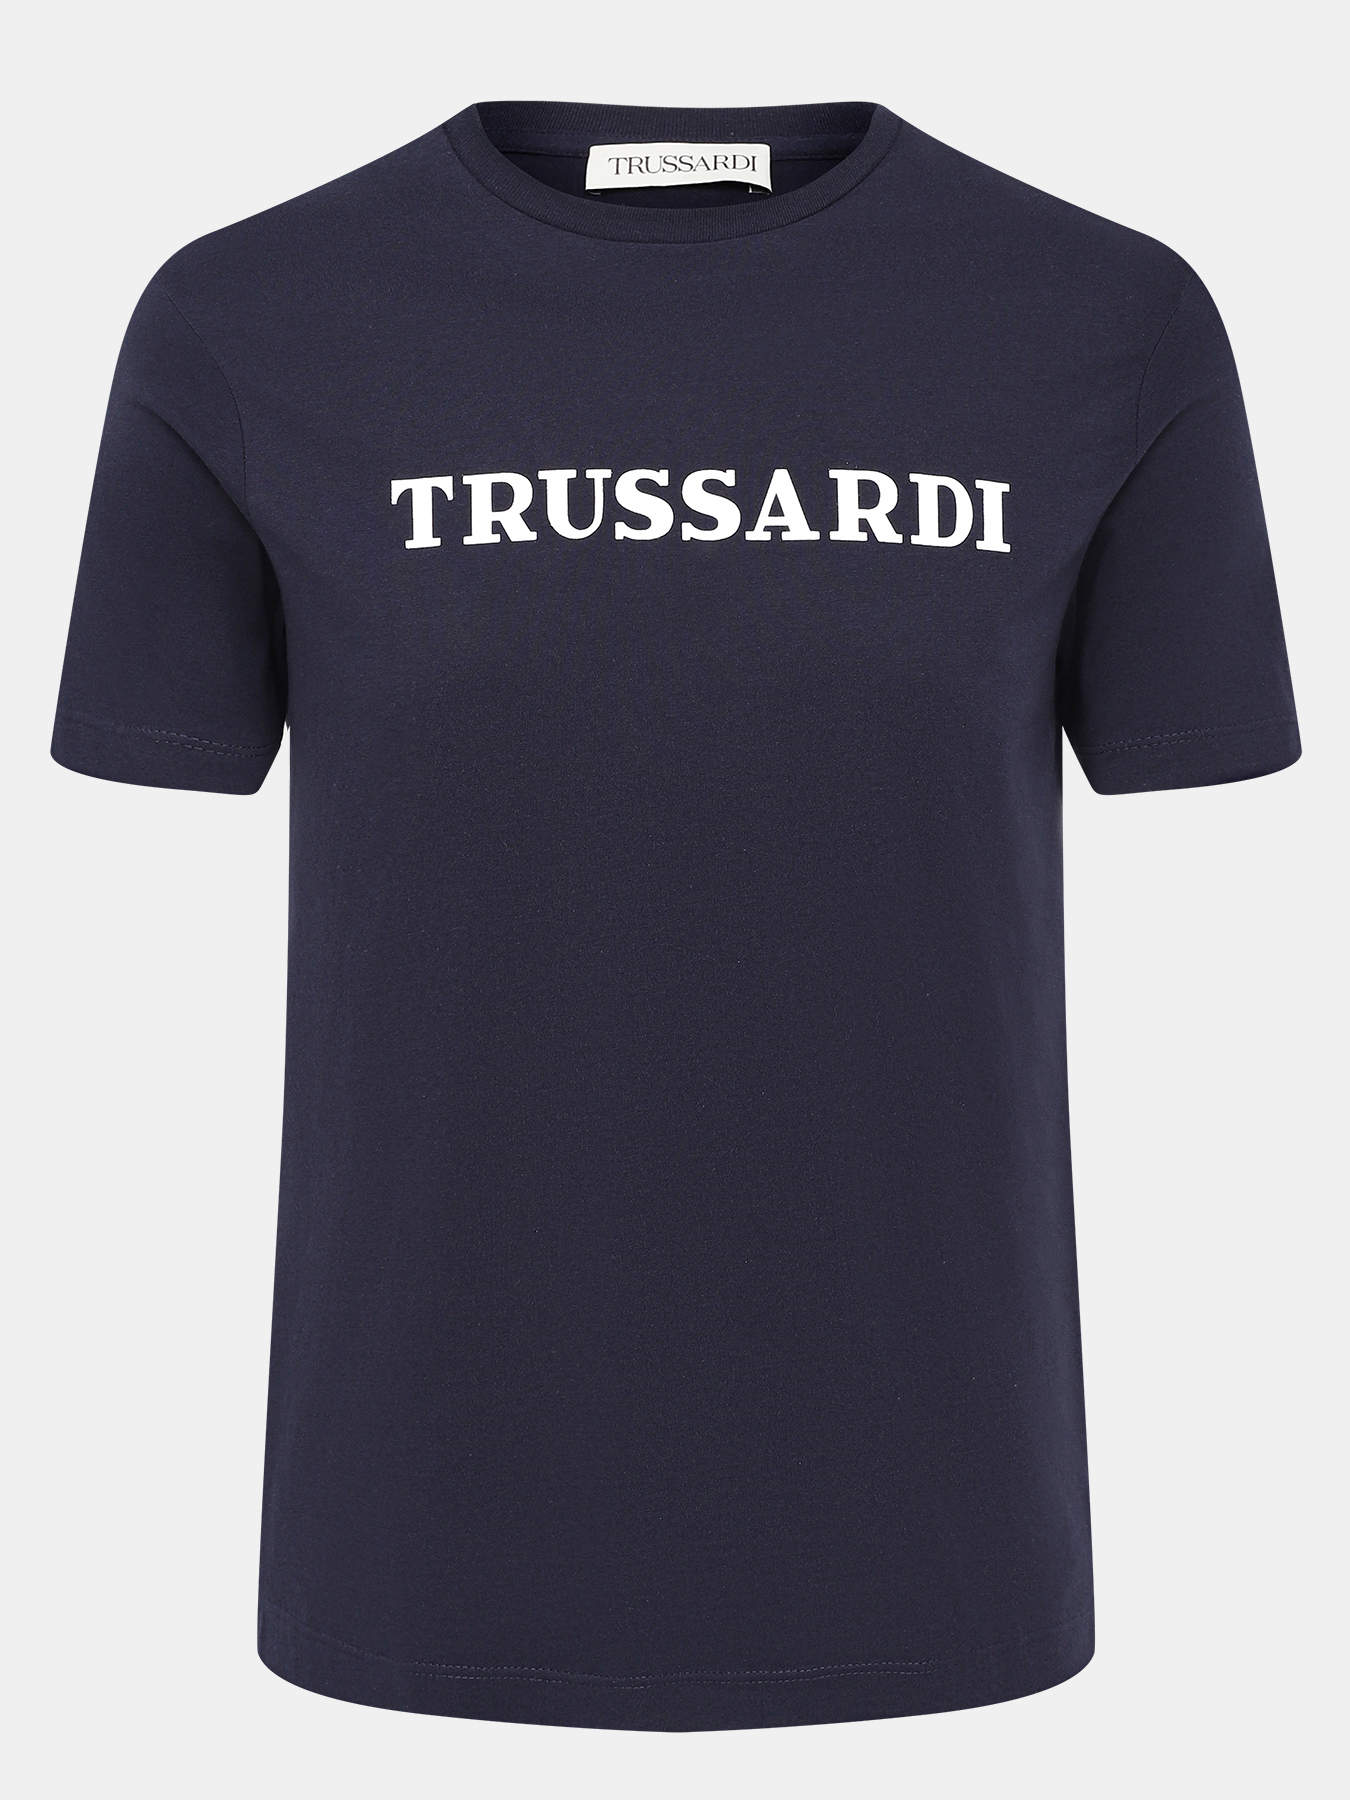 Футболка Trussardi 421336-045, цвет темно-синий, размер 52-54 - фото 1